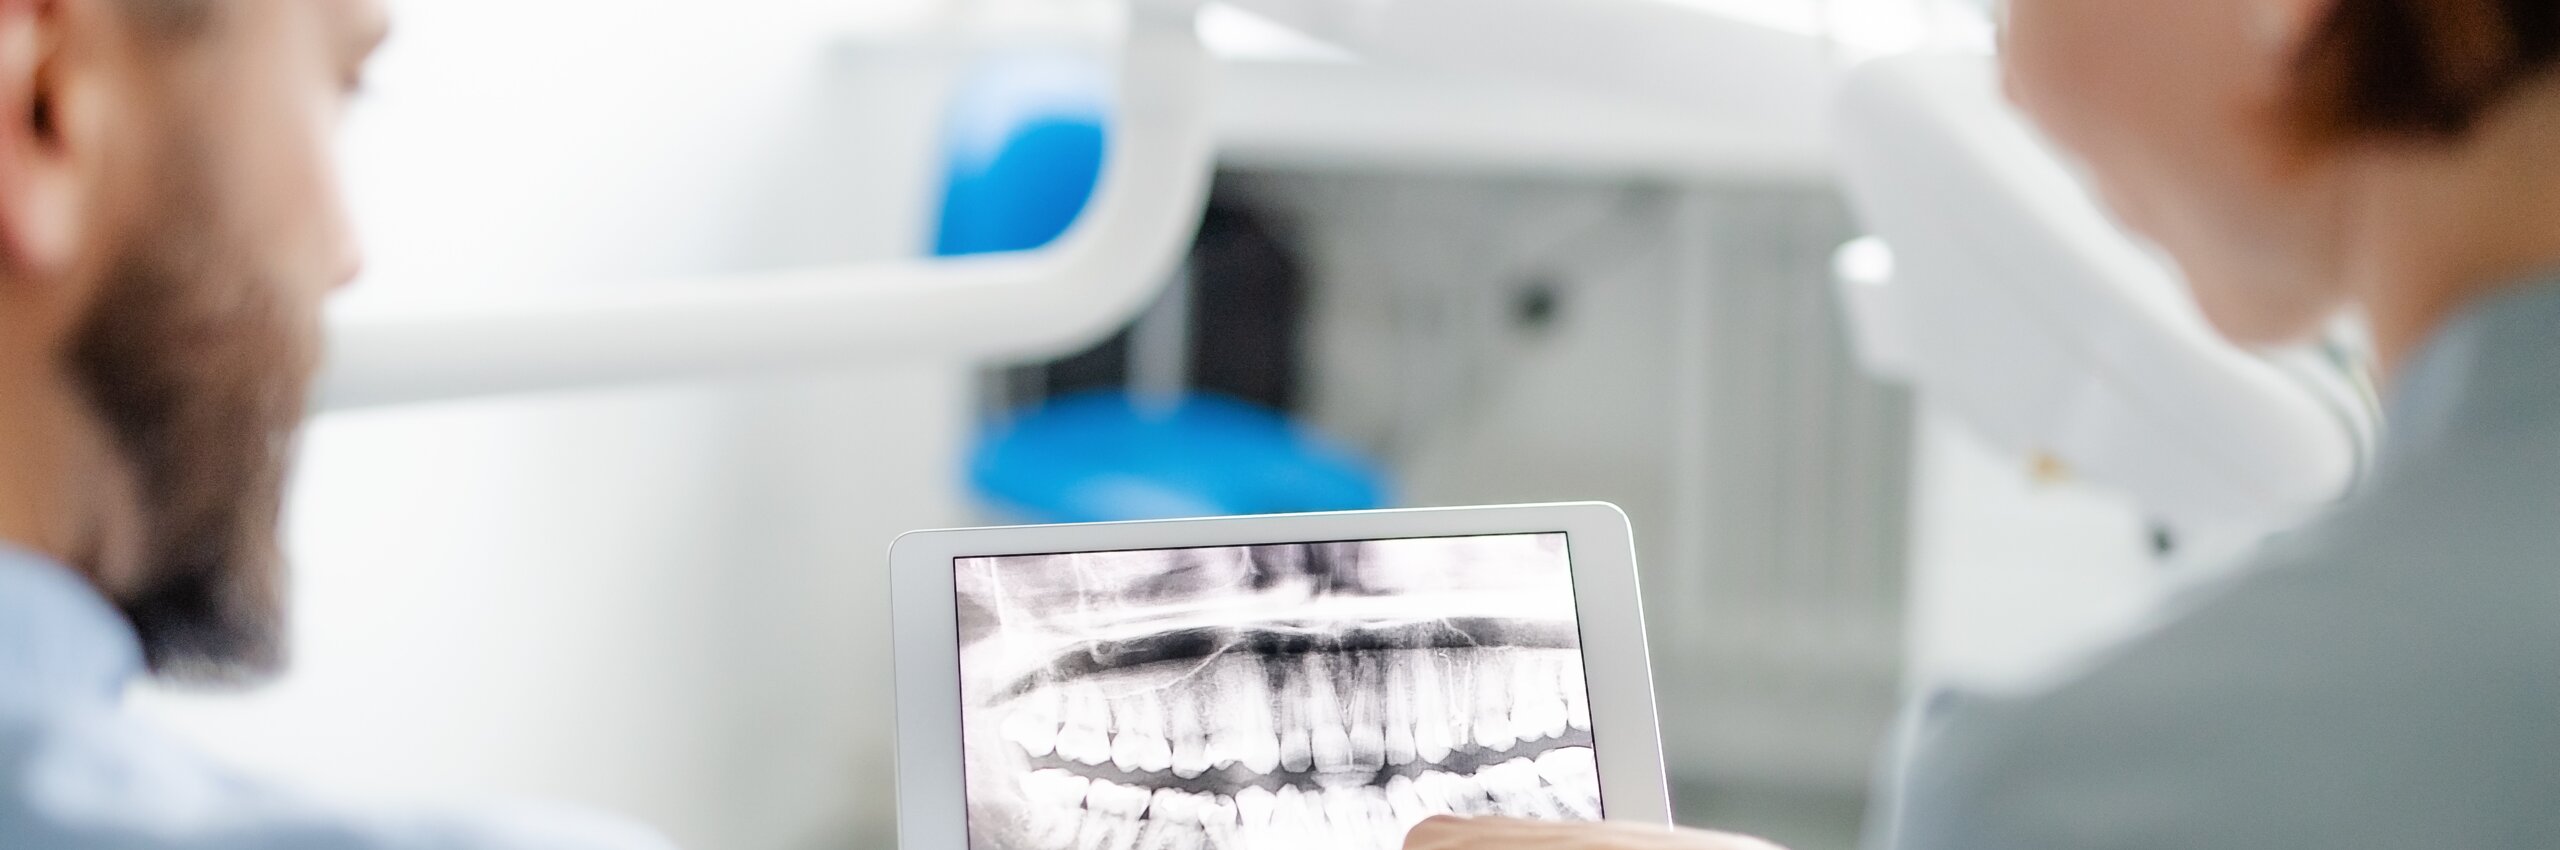 Zufriedener Patient nach digitaler Zahnbehandlung bei Crown48